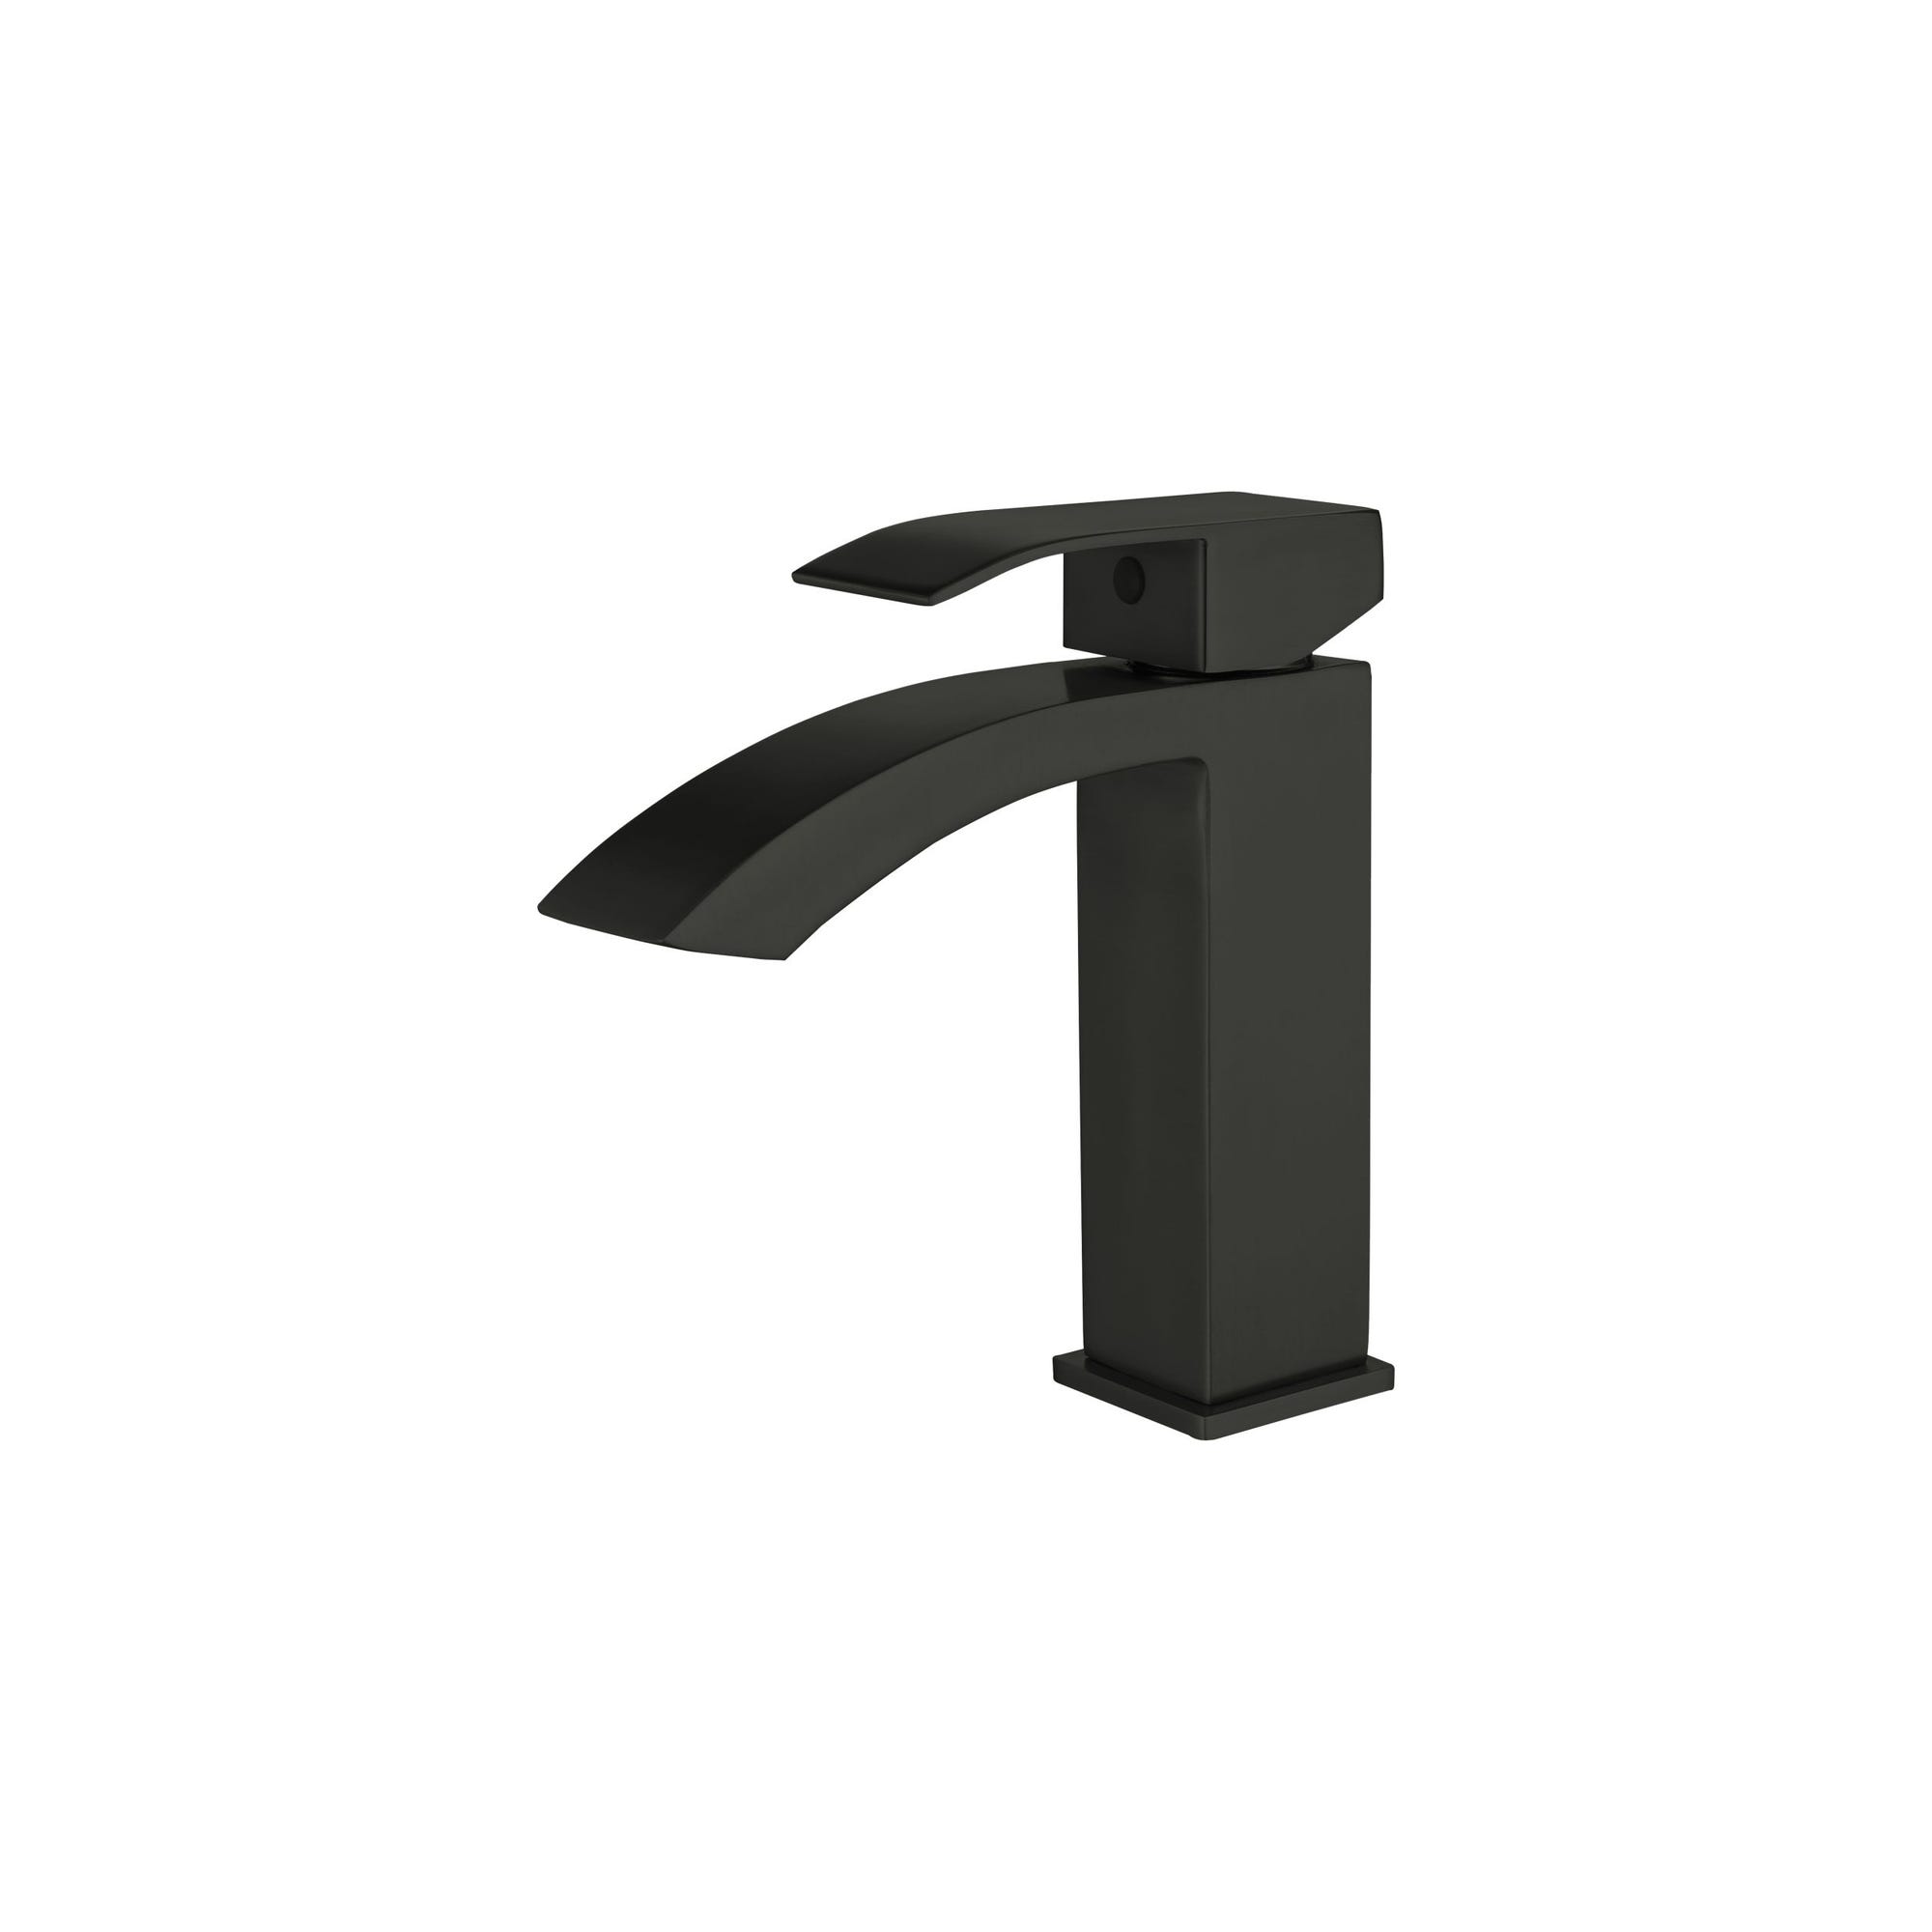 Robinet salle de bain Mitigeur lavabo CABERNET en acier inoxydable couleur noire 4,2 x 15 x 15 cm 0